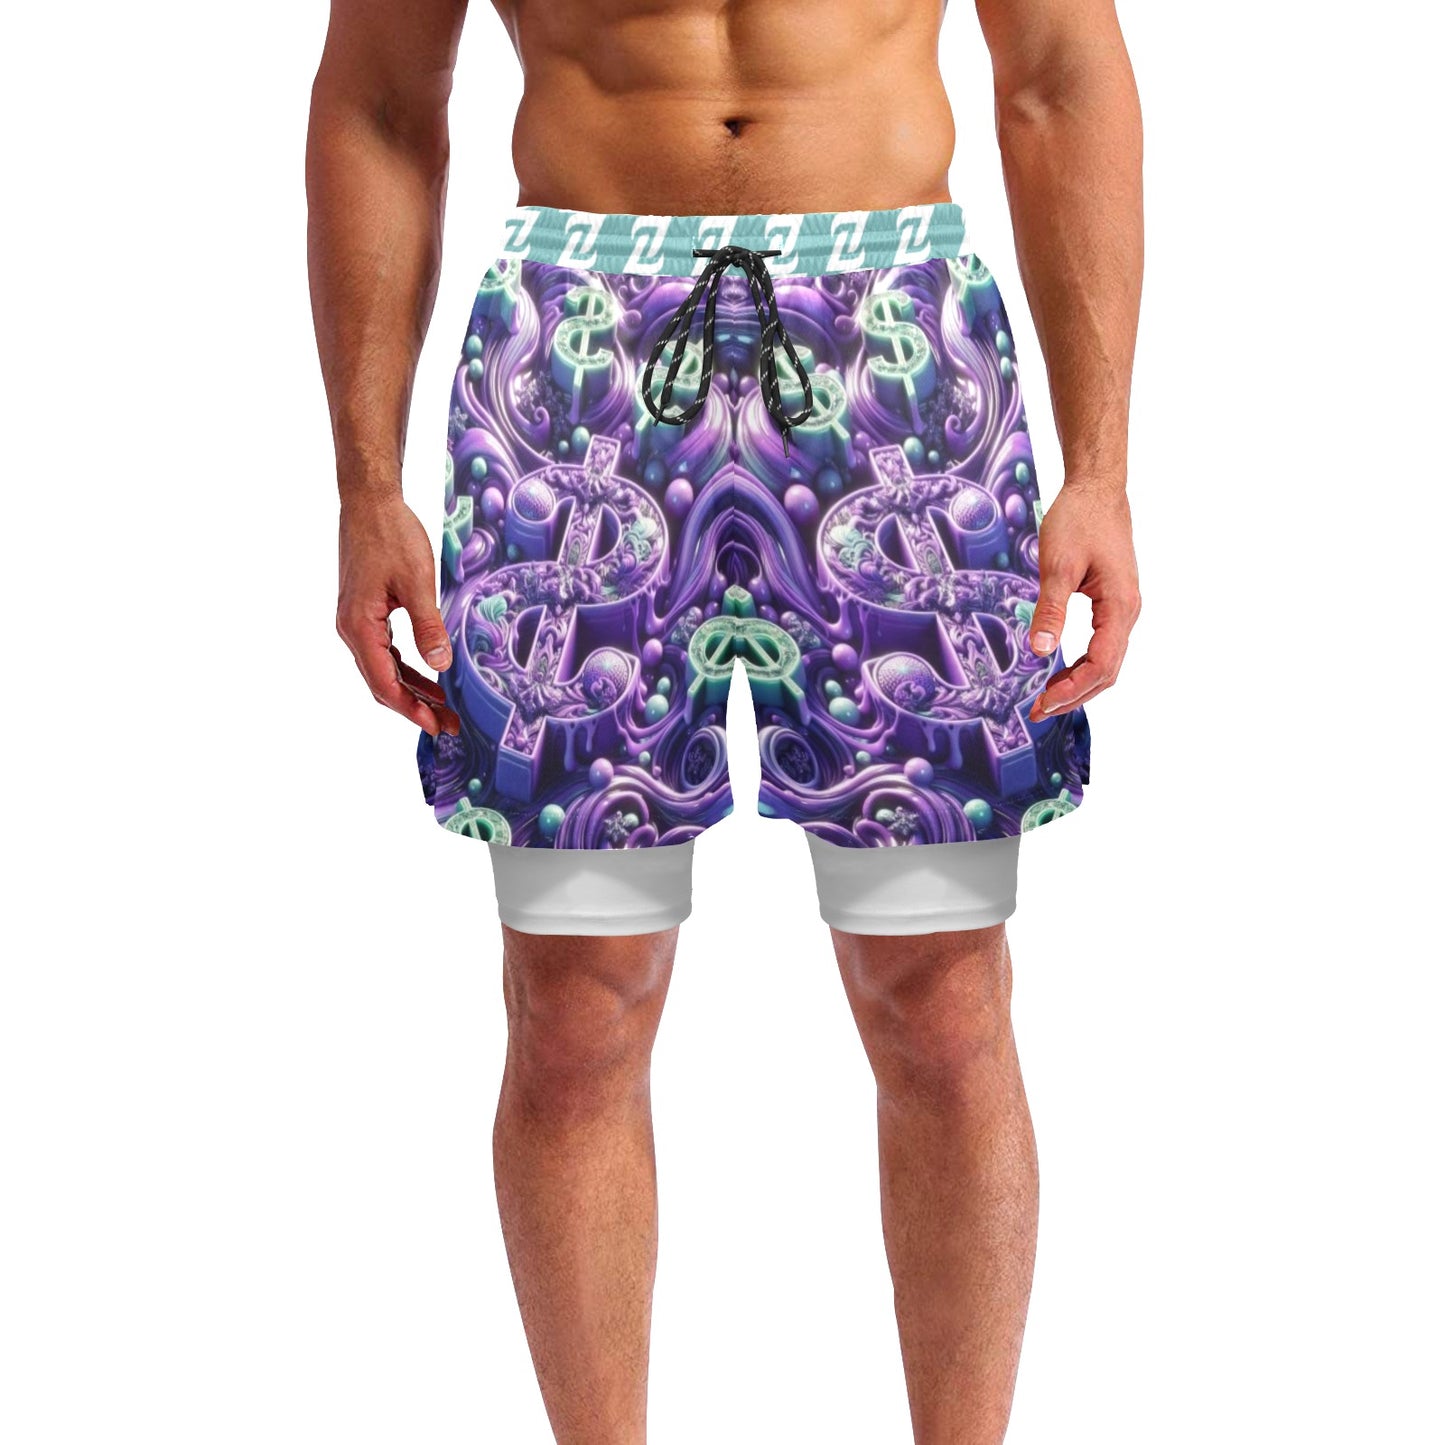 Zen Shorts with Liner - Purple Money